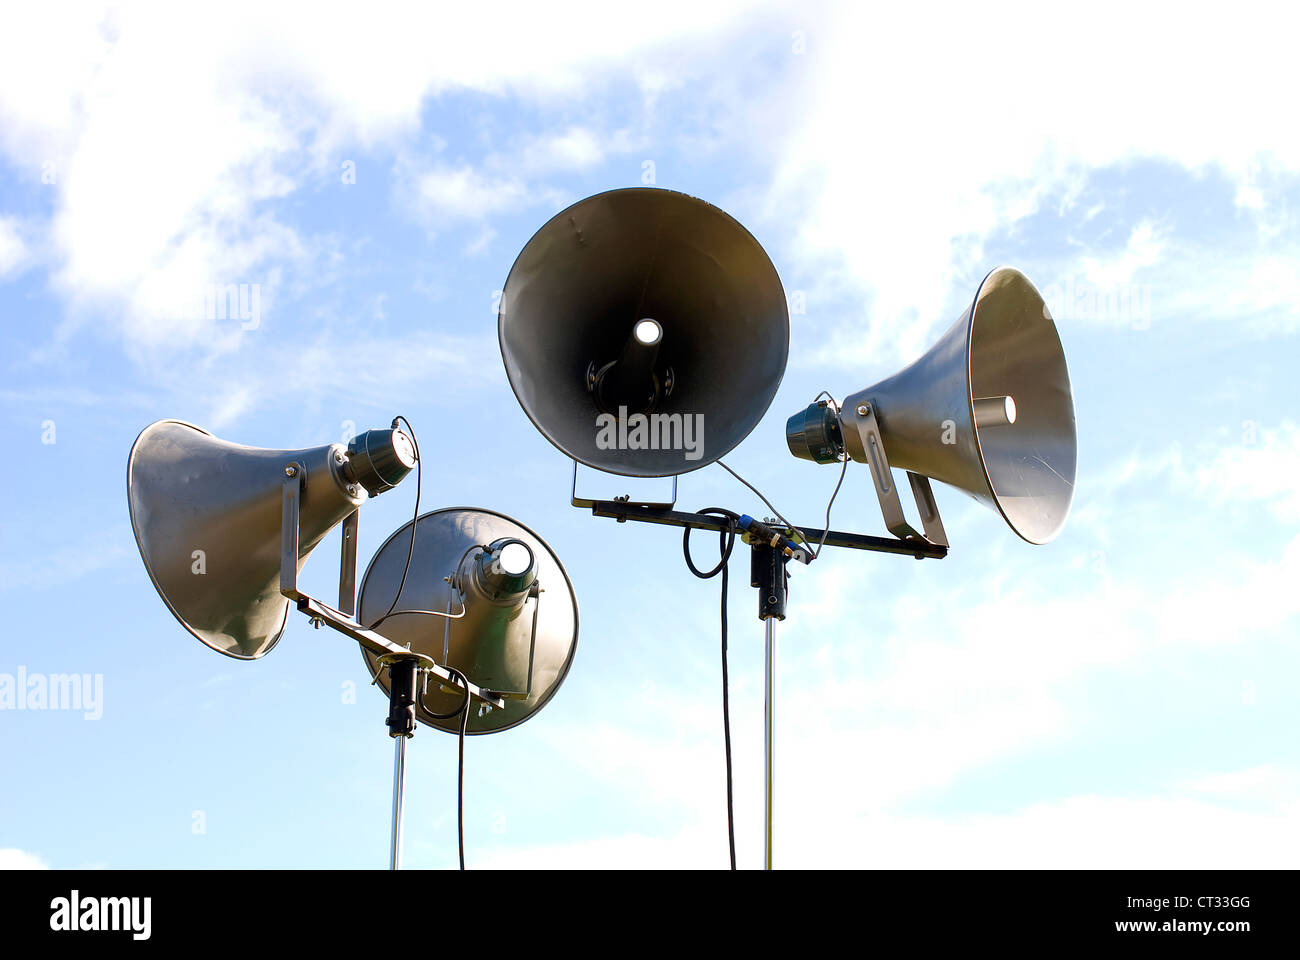 Gruppiert mehrere Lautsprecher im Retro-Design, gegen den blauen Himmel im Hintergrund Stockfoto